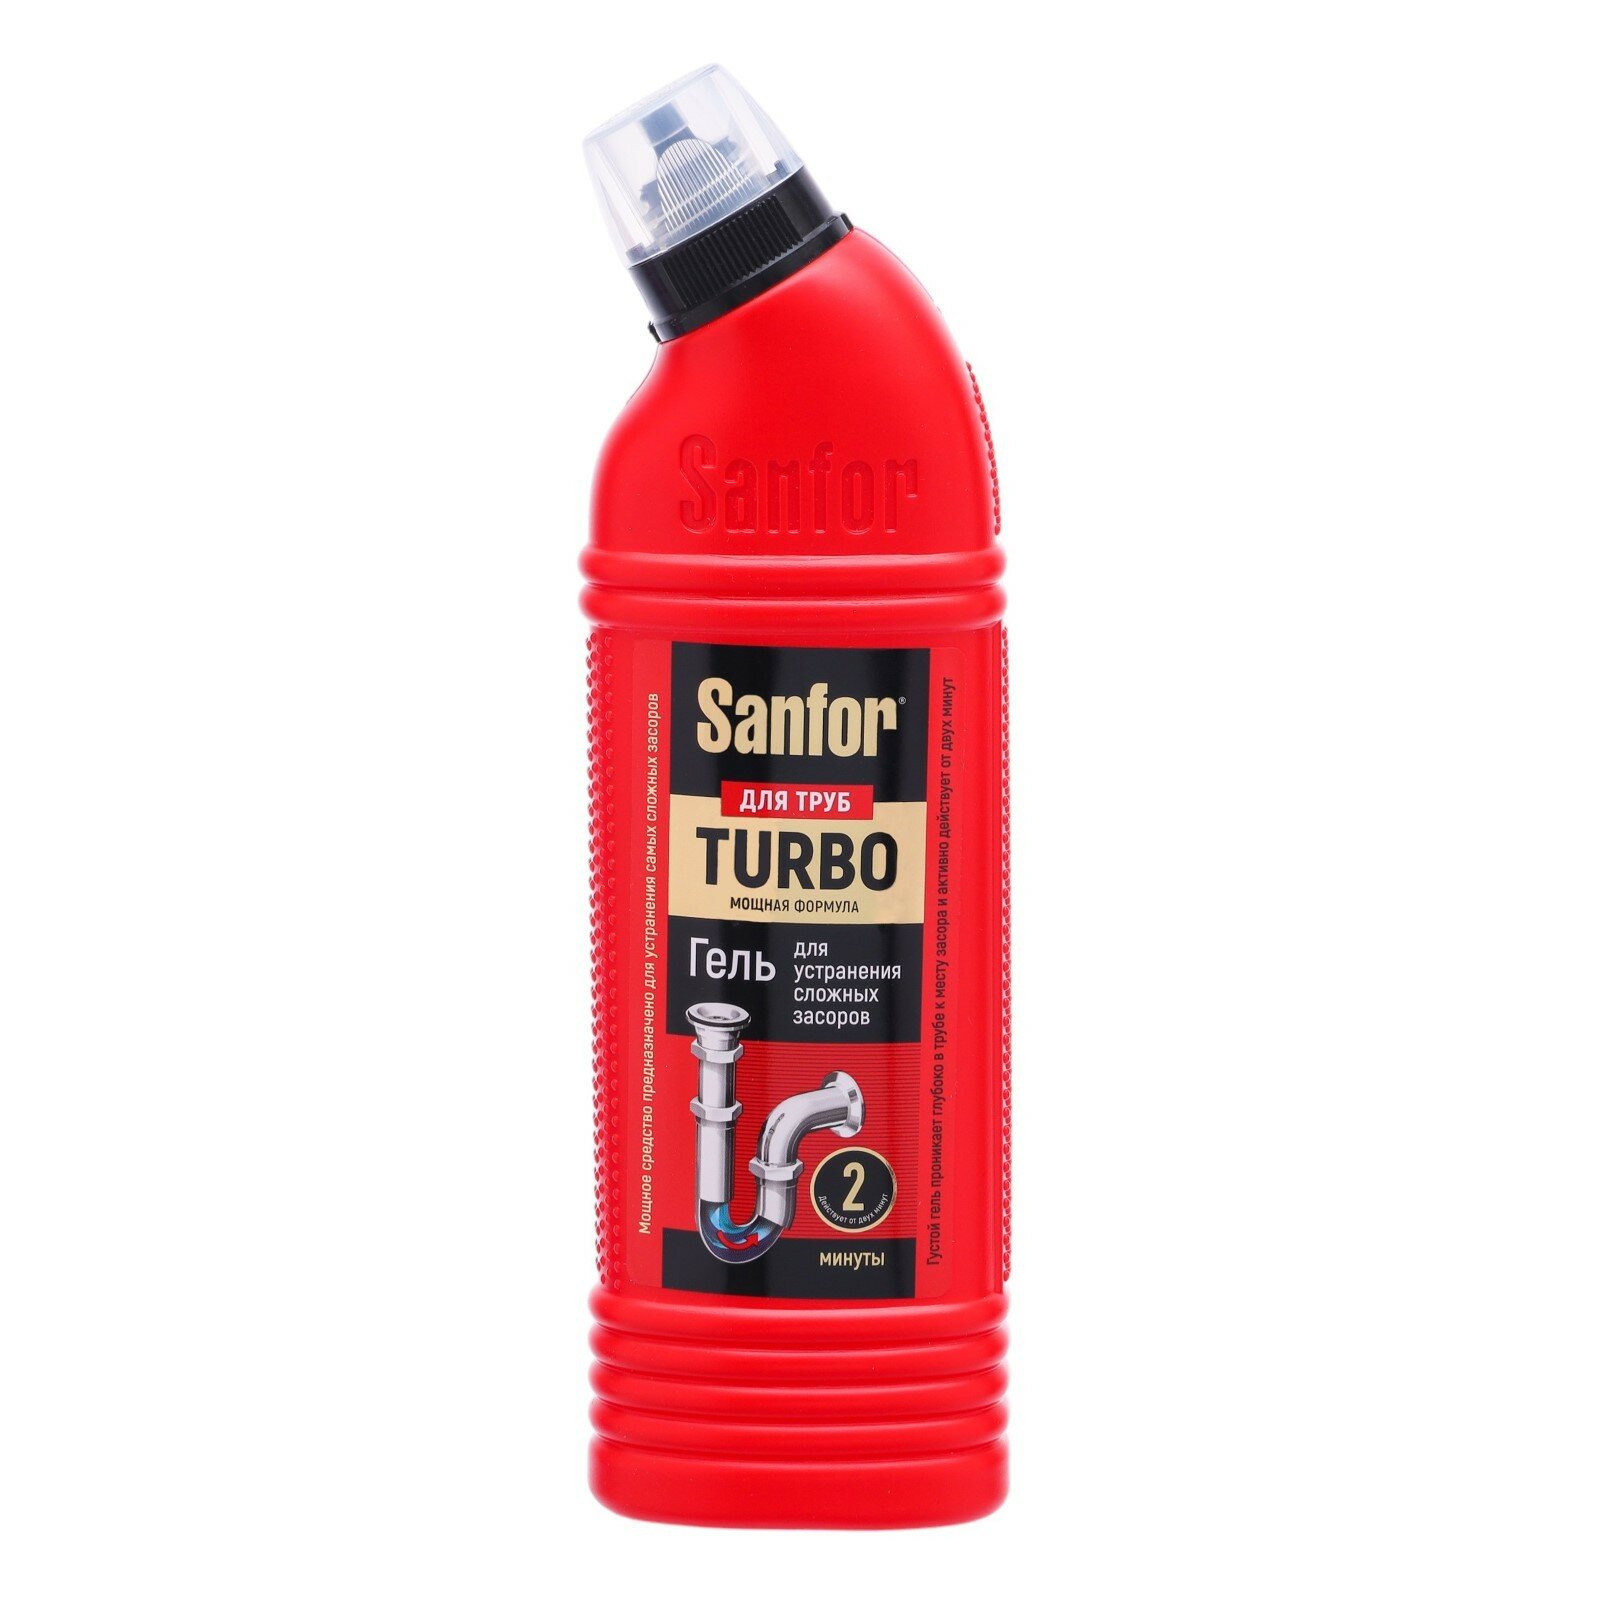 Средство для очистки канализационных труб Turbo, 500 гр